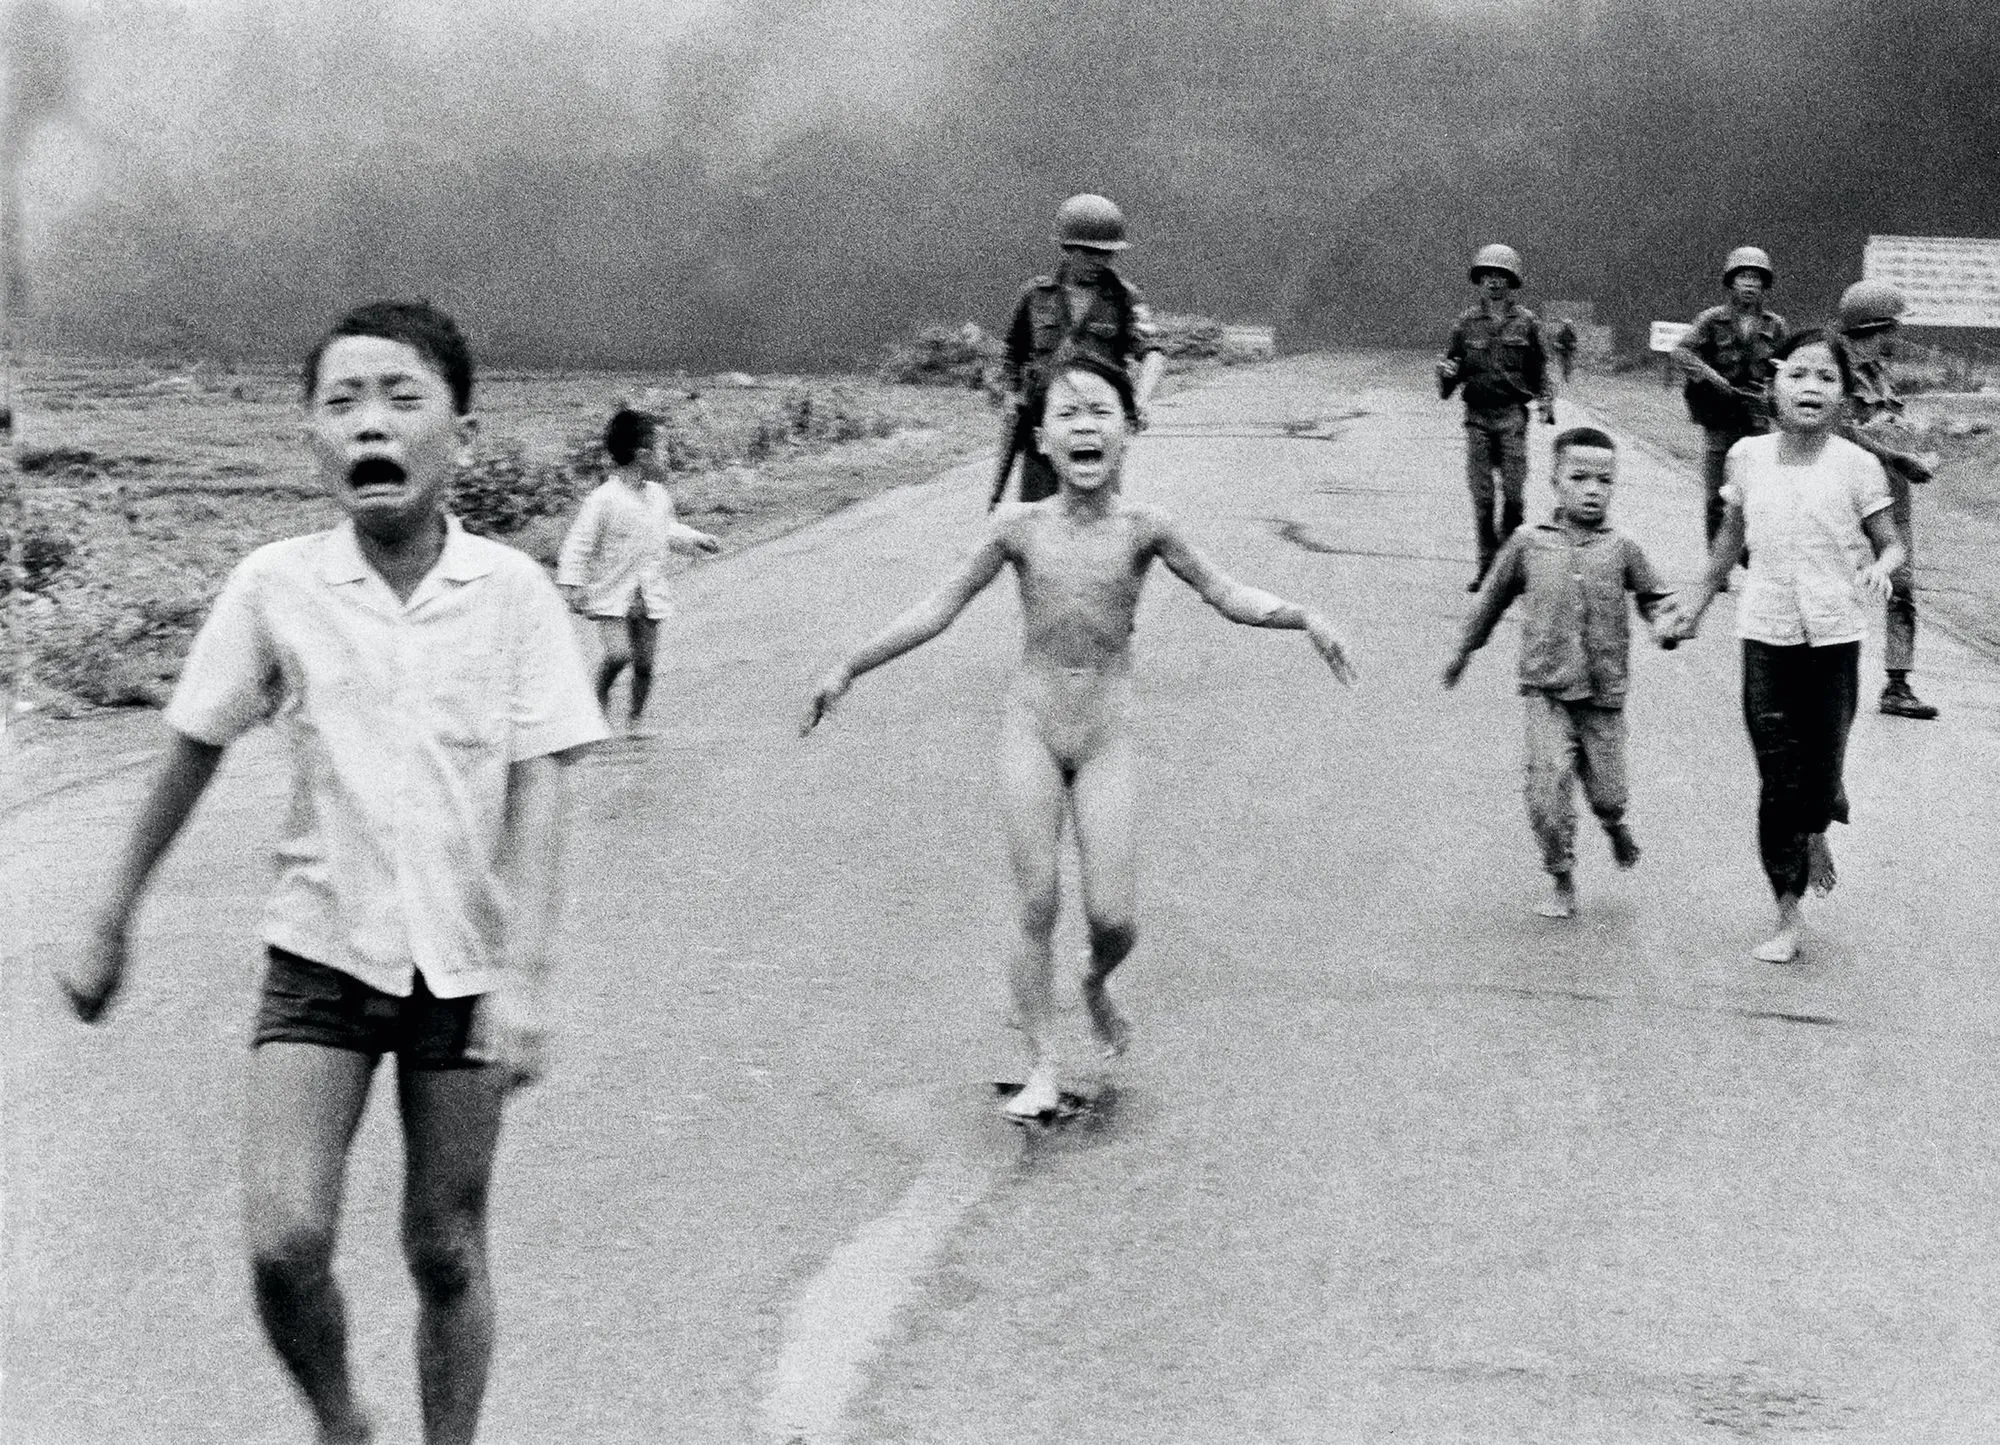 Nick Ut, fillette vietnamienne brûlée après un bombardement au napalm, 8 juin 1972, photographie